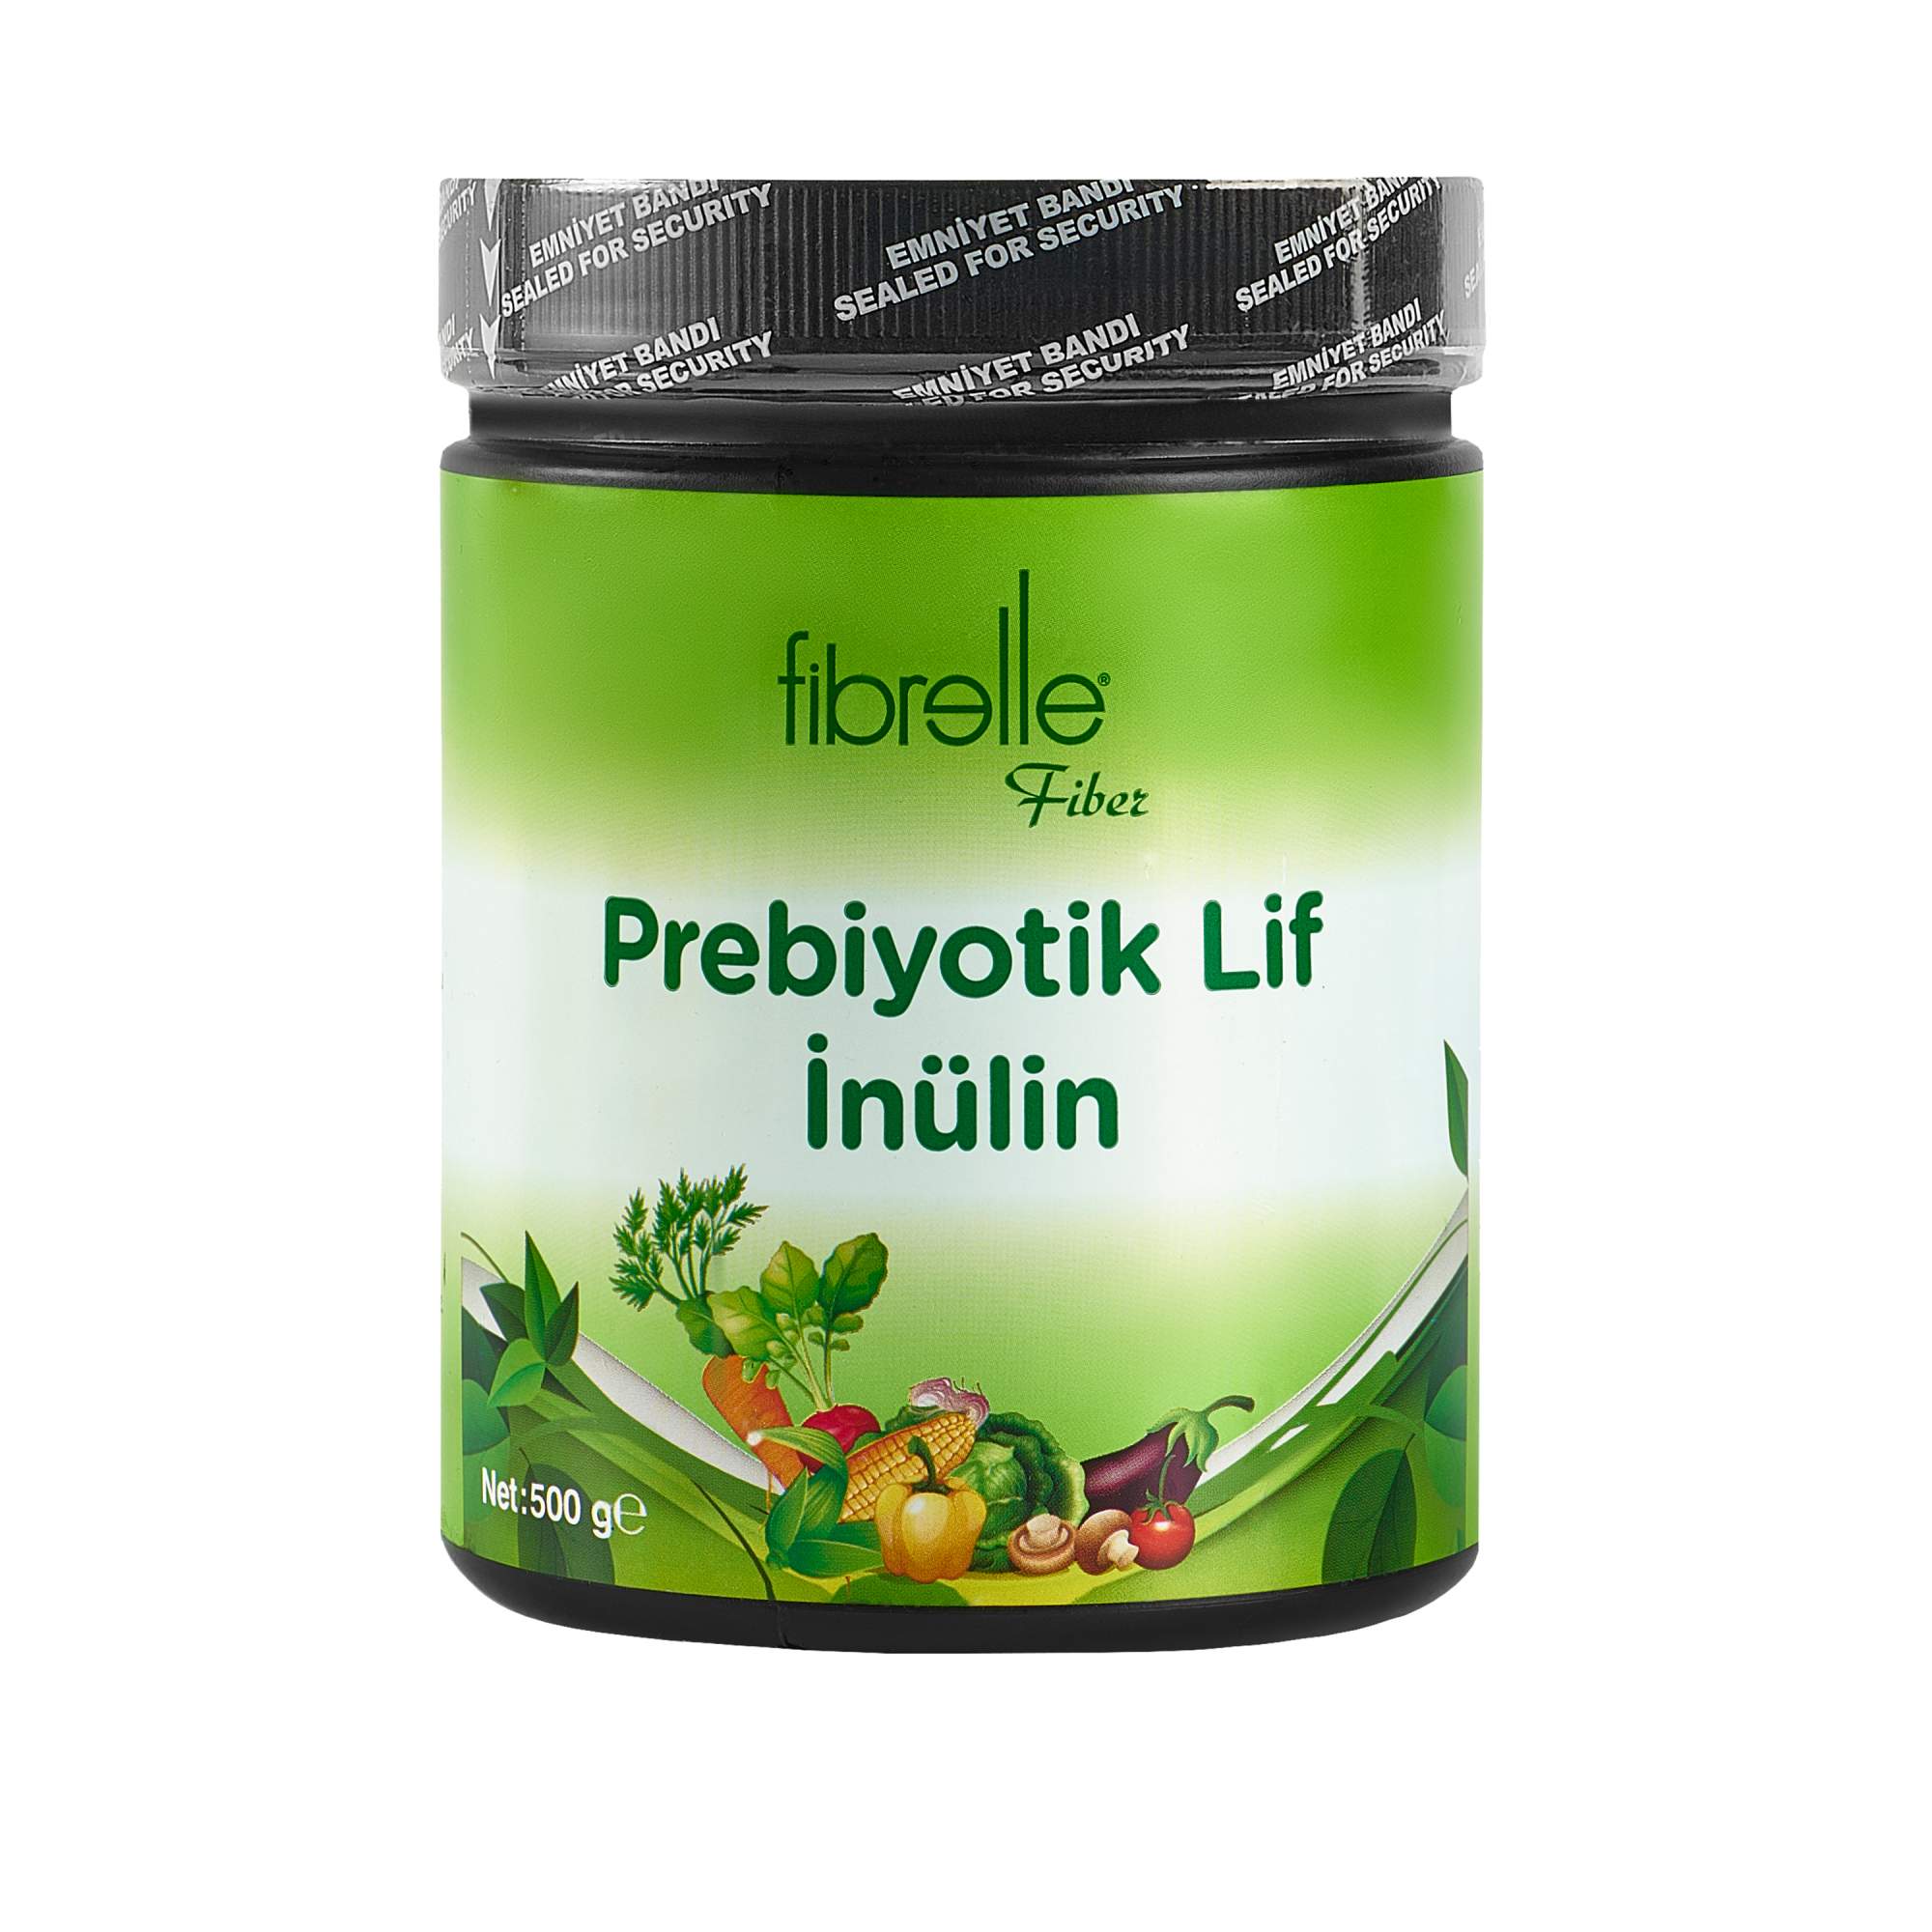 Купить инулин Fibrelle Lif с пребиотическими пищевыми волокнами, 500 г, цены на Мегамаркет | Артикул: 600017443514